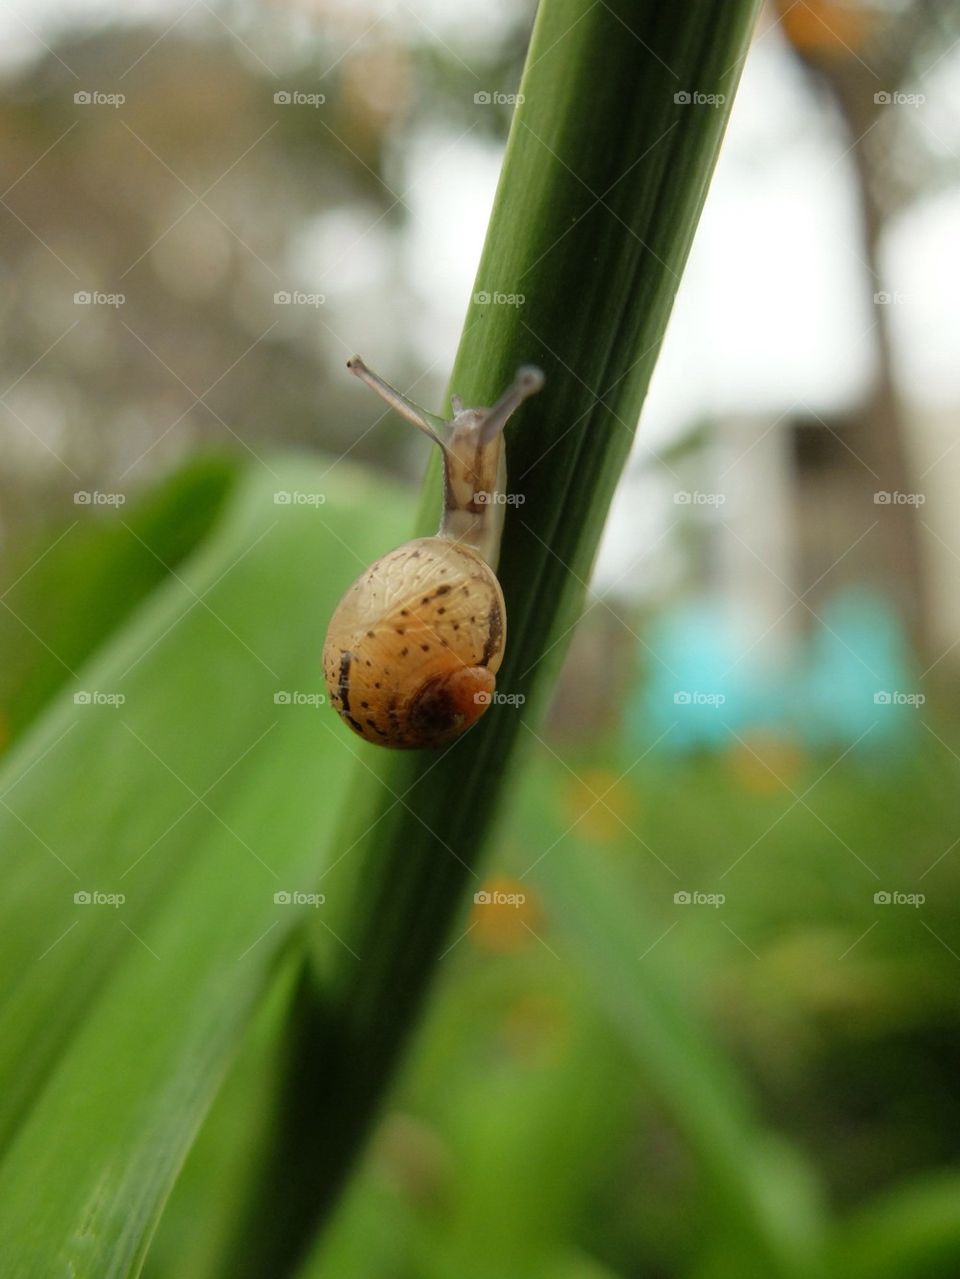 Snail on a stalk